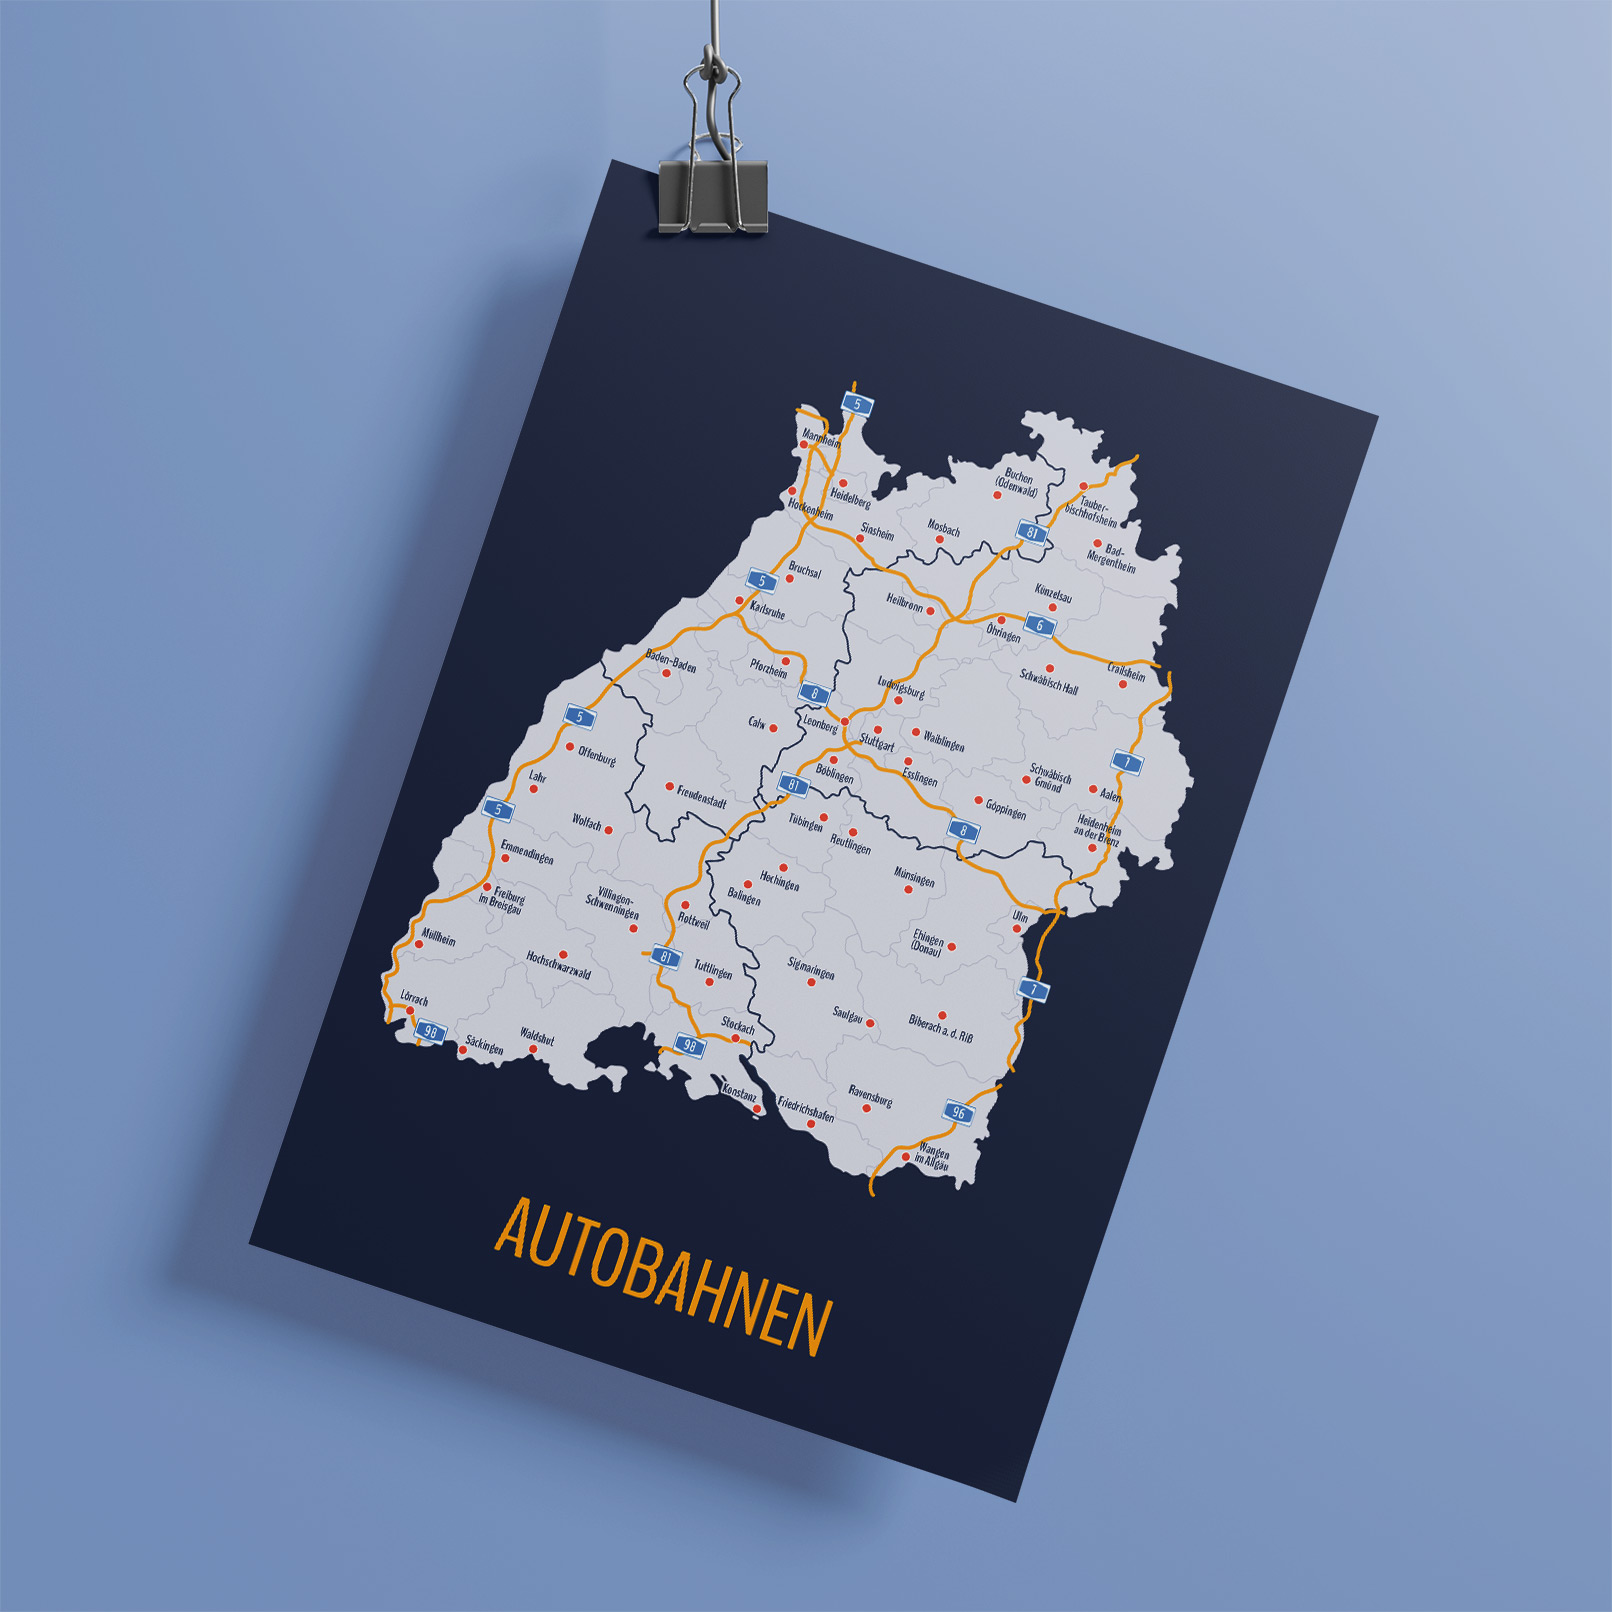 Landkarte von Baden-Württemberg mit Städten, Autobahnen und allen Stadt- und Landkreisen